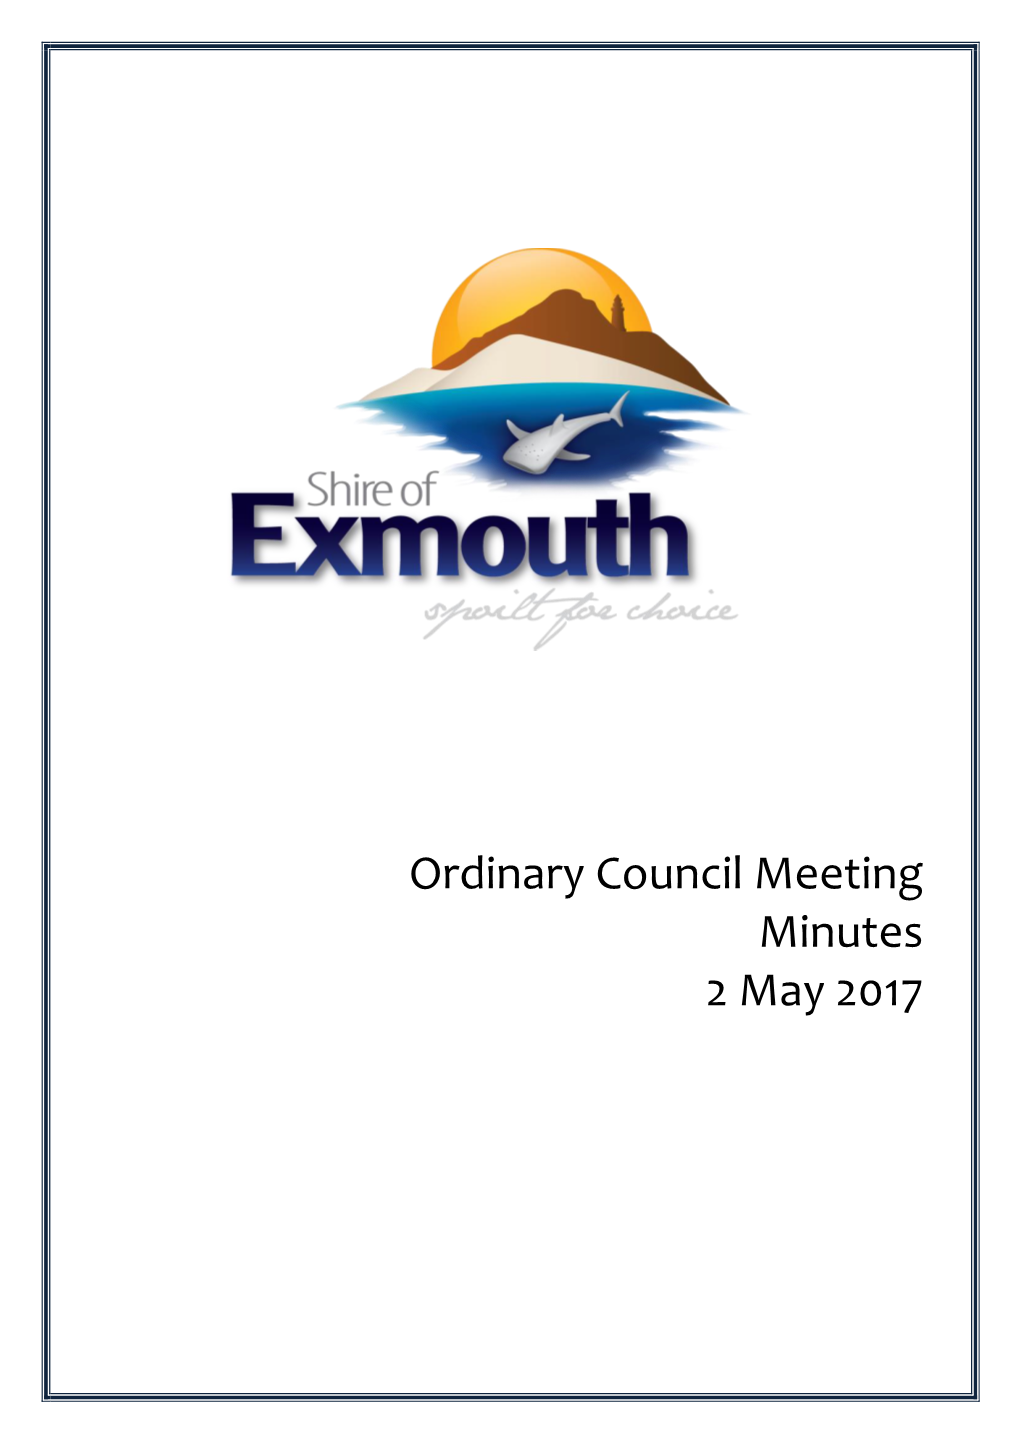 Ordinary Council Meeting Minutes 2 May 2017